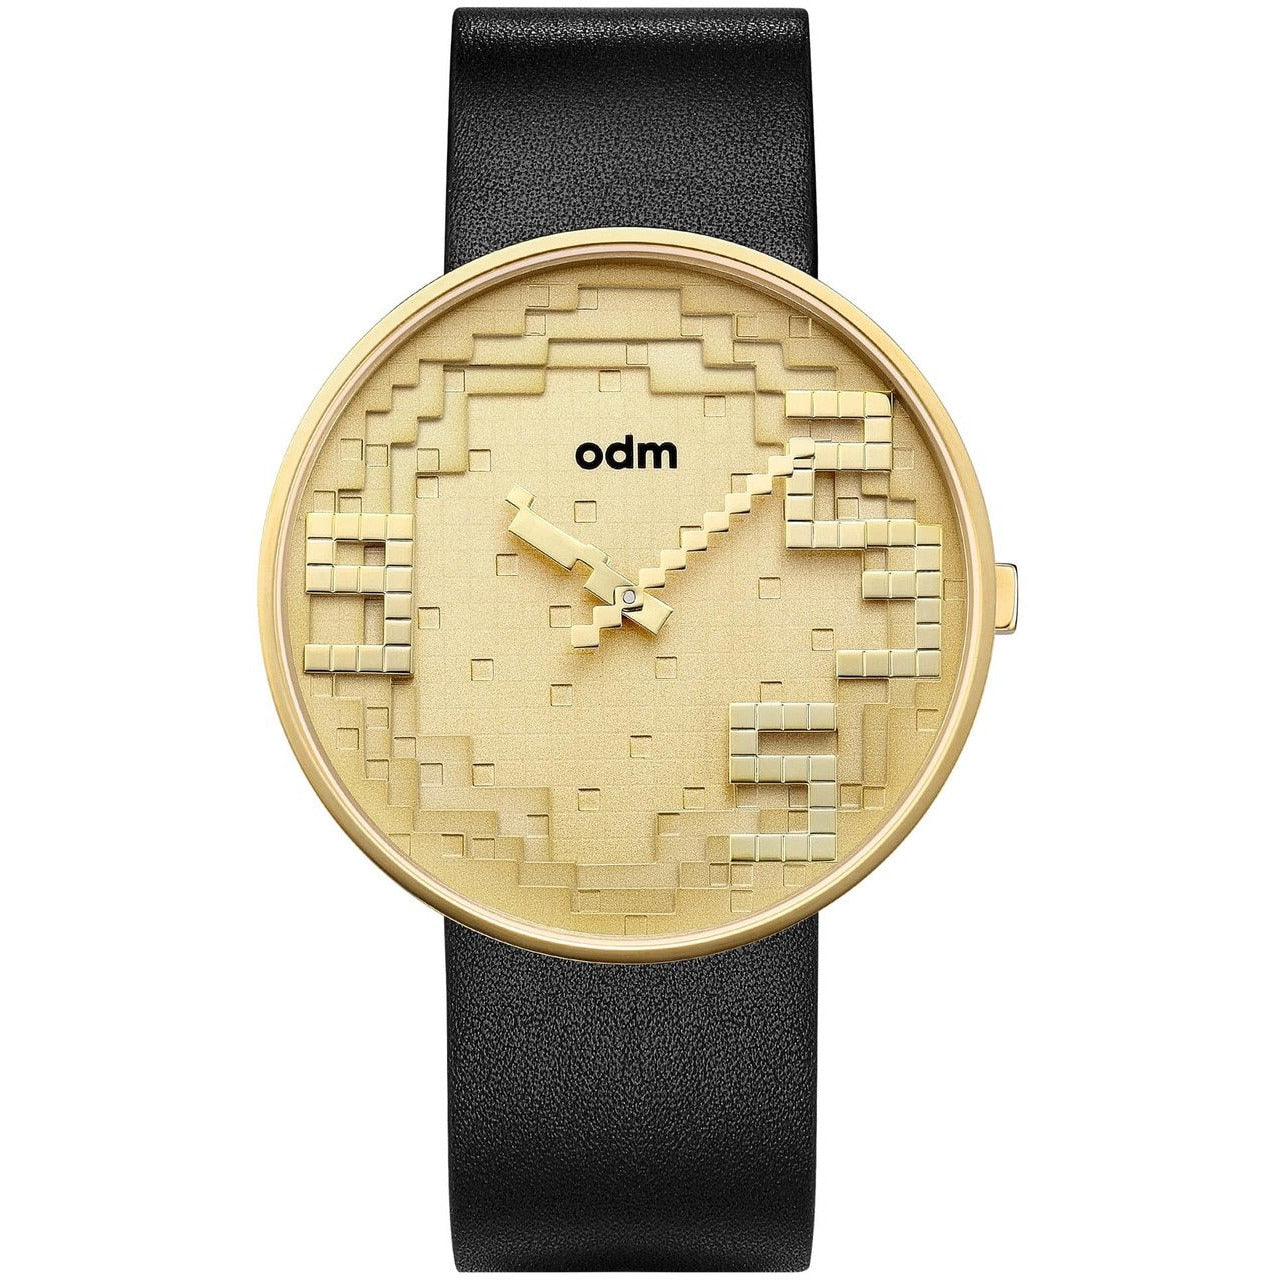 odm watch